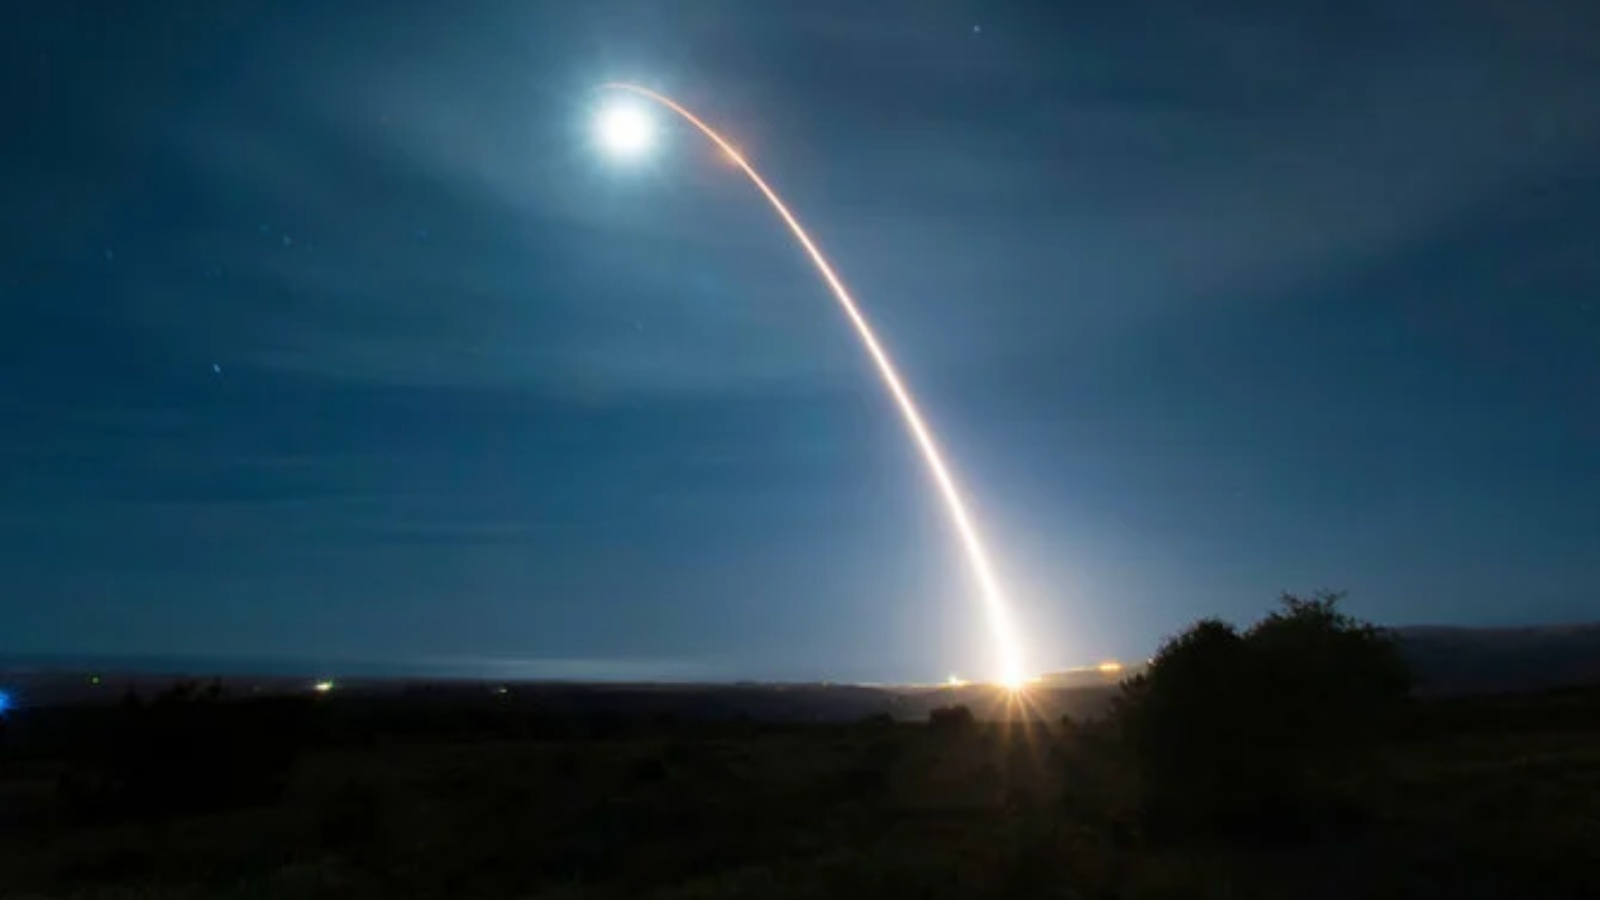 تُظهر صورة القوات الجوية الأميركية صاروخًا باليستيًا عابرًا للقارات من طراز مينوتمان 3 أثناء إطلاقه أثناء اختبار تطويري في الساعة 12:33 صباحًا